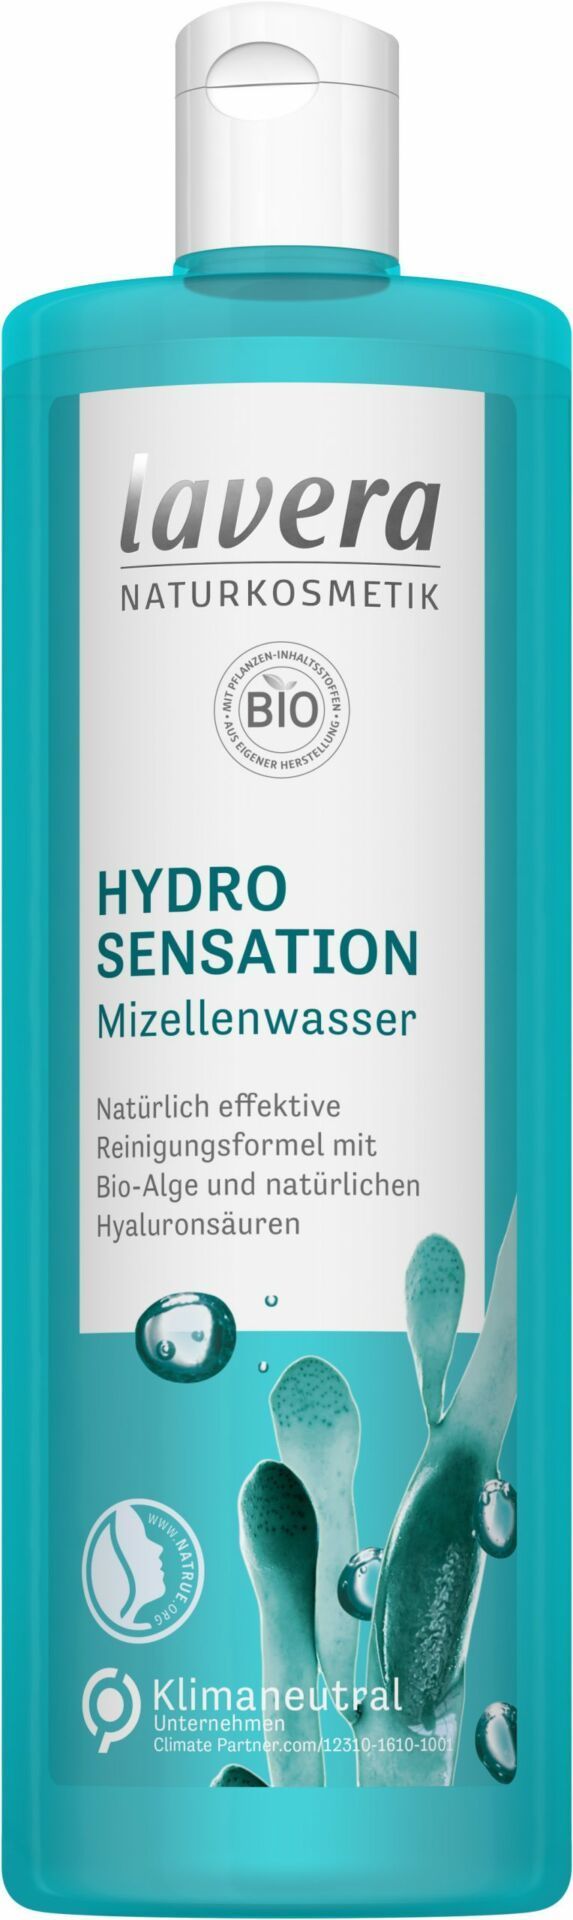 lavera Hydro Sensation Mizellenwasser 400ml